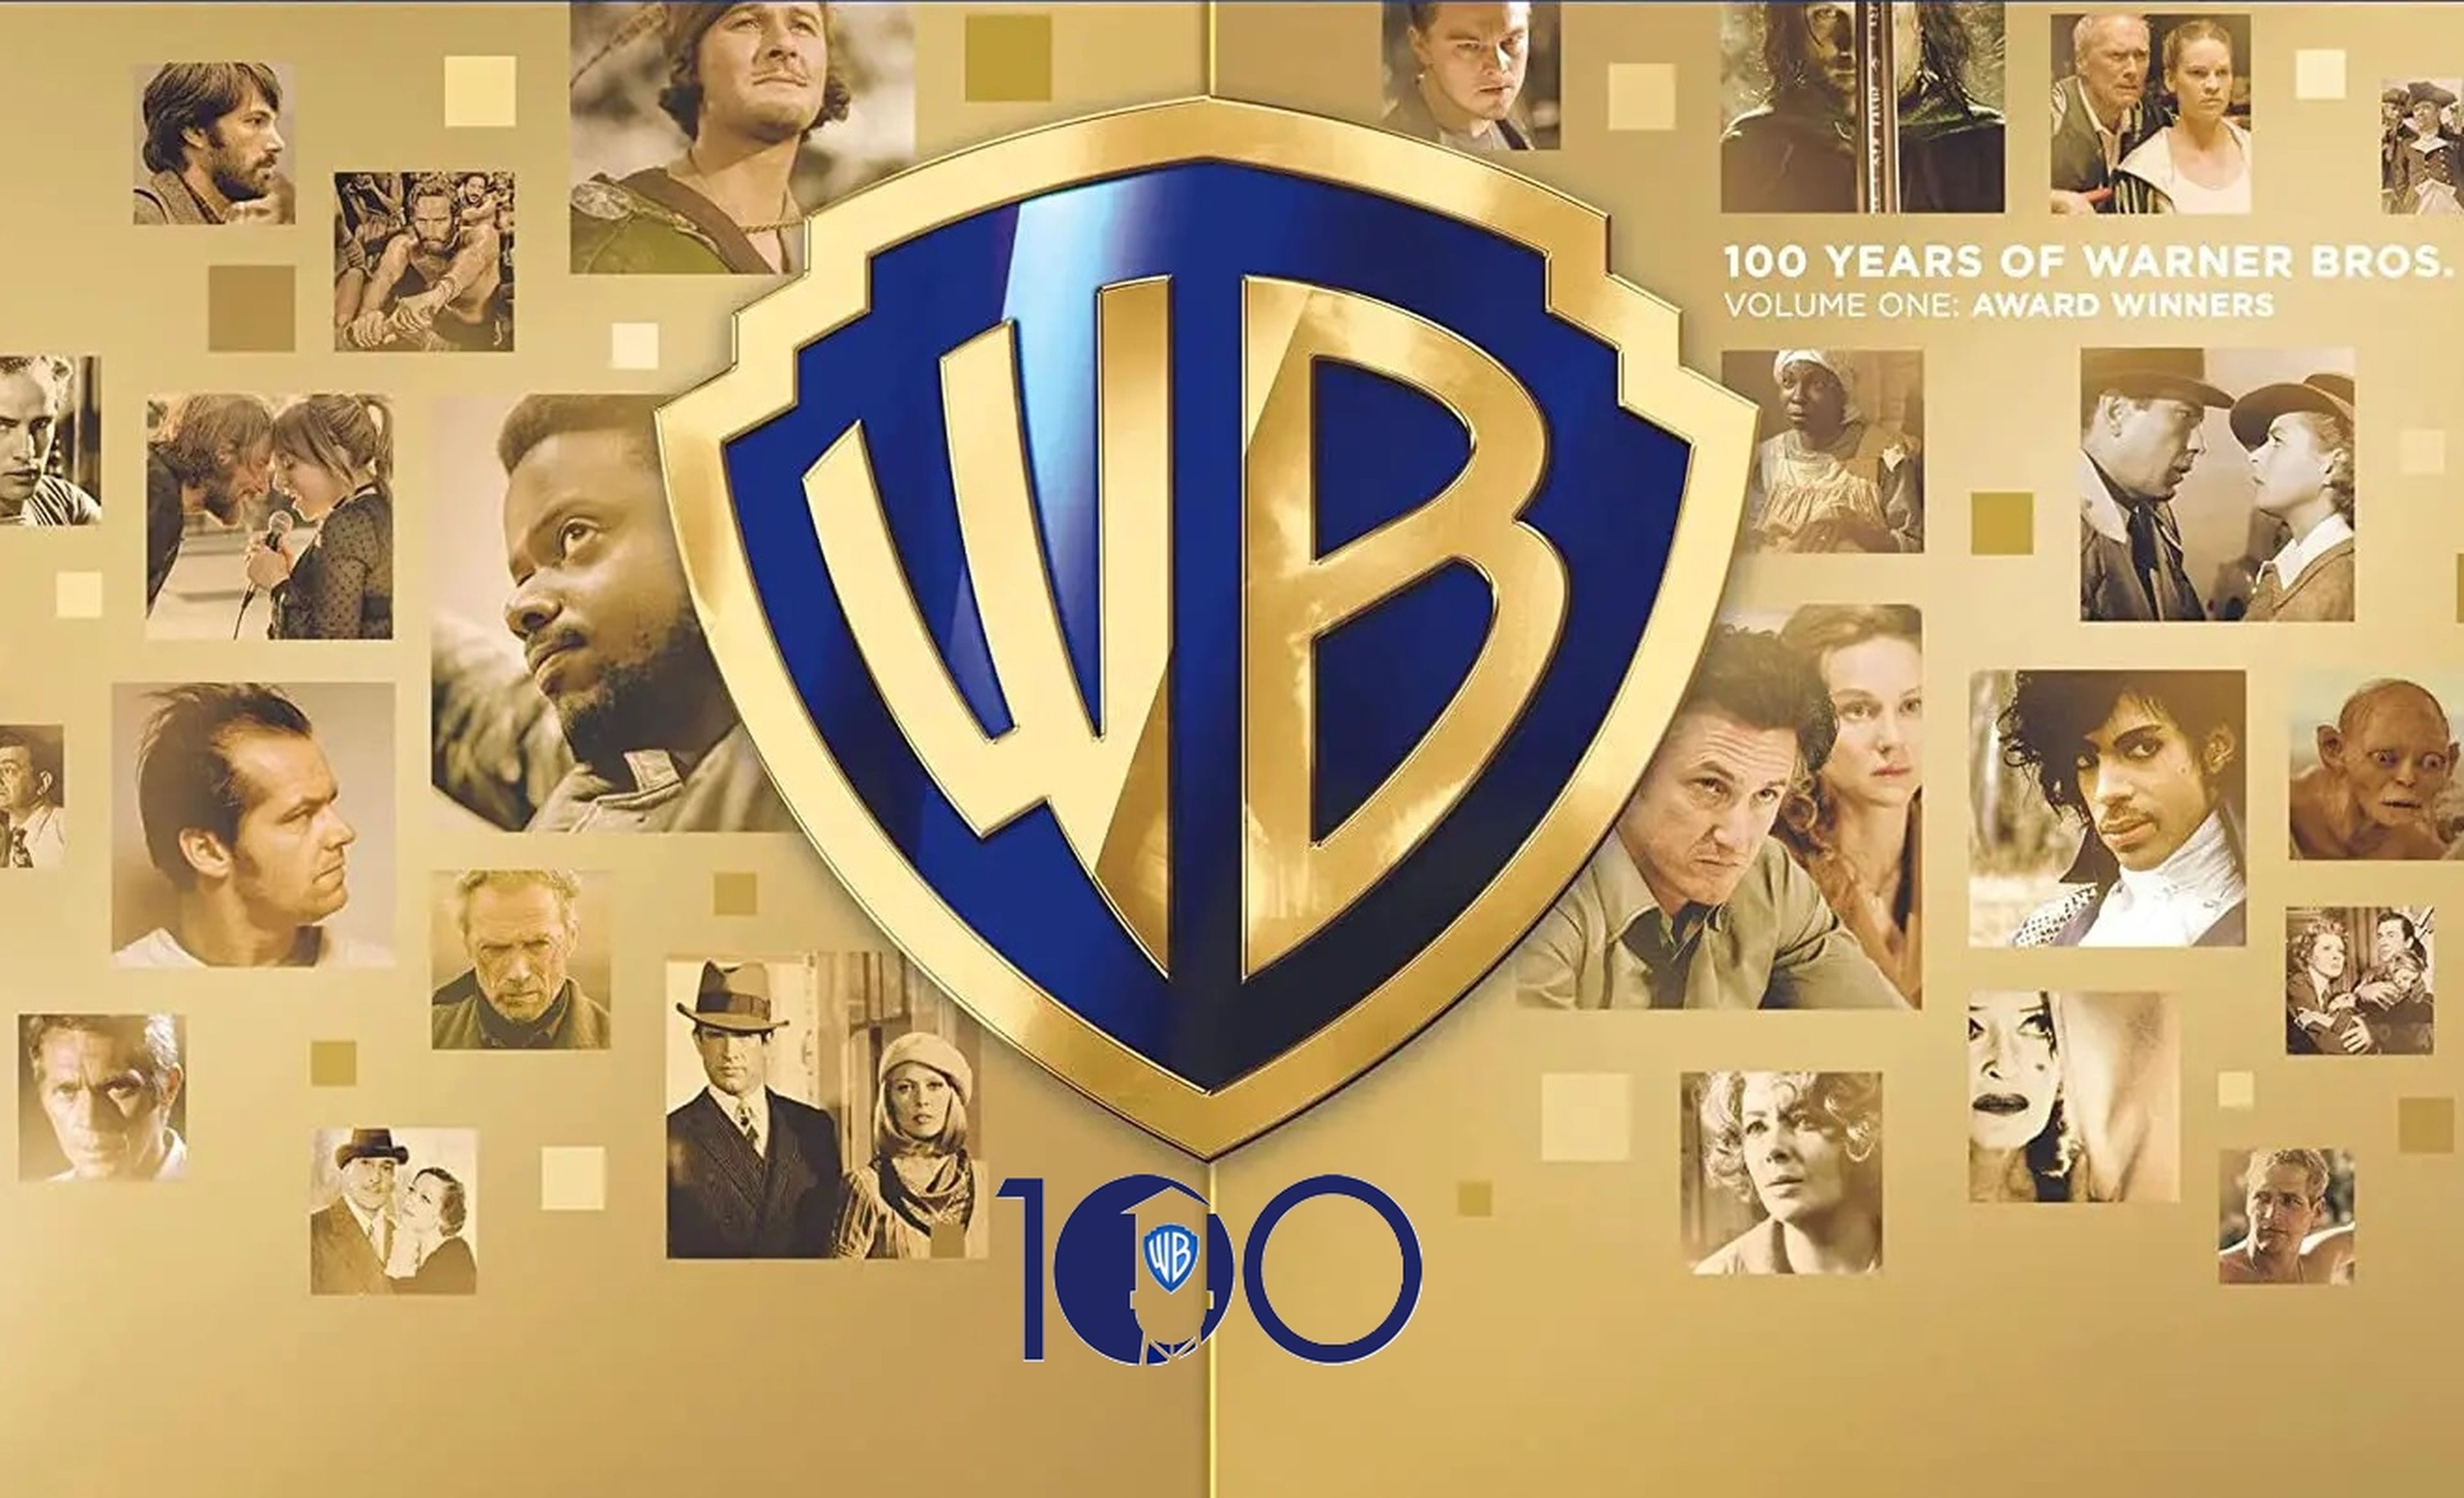 Warner cumple 100 años y lo celebra reestrenando en cines películas míticas como Superman o El Exorcista